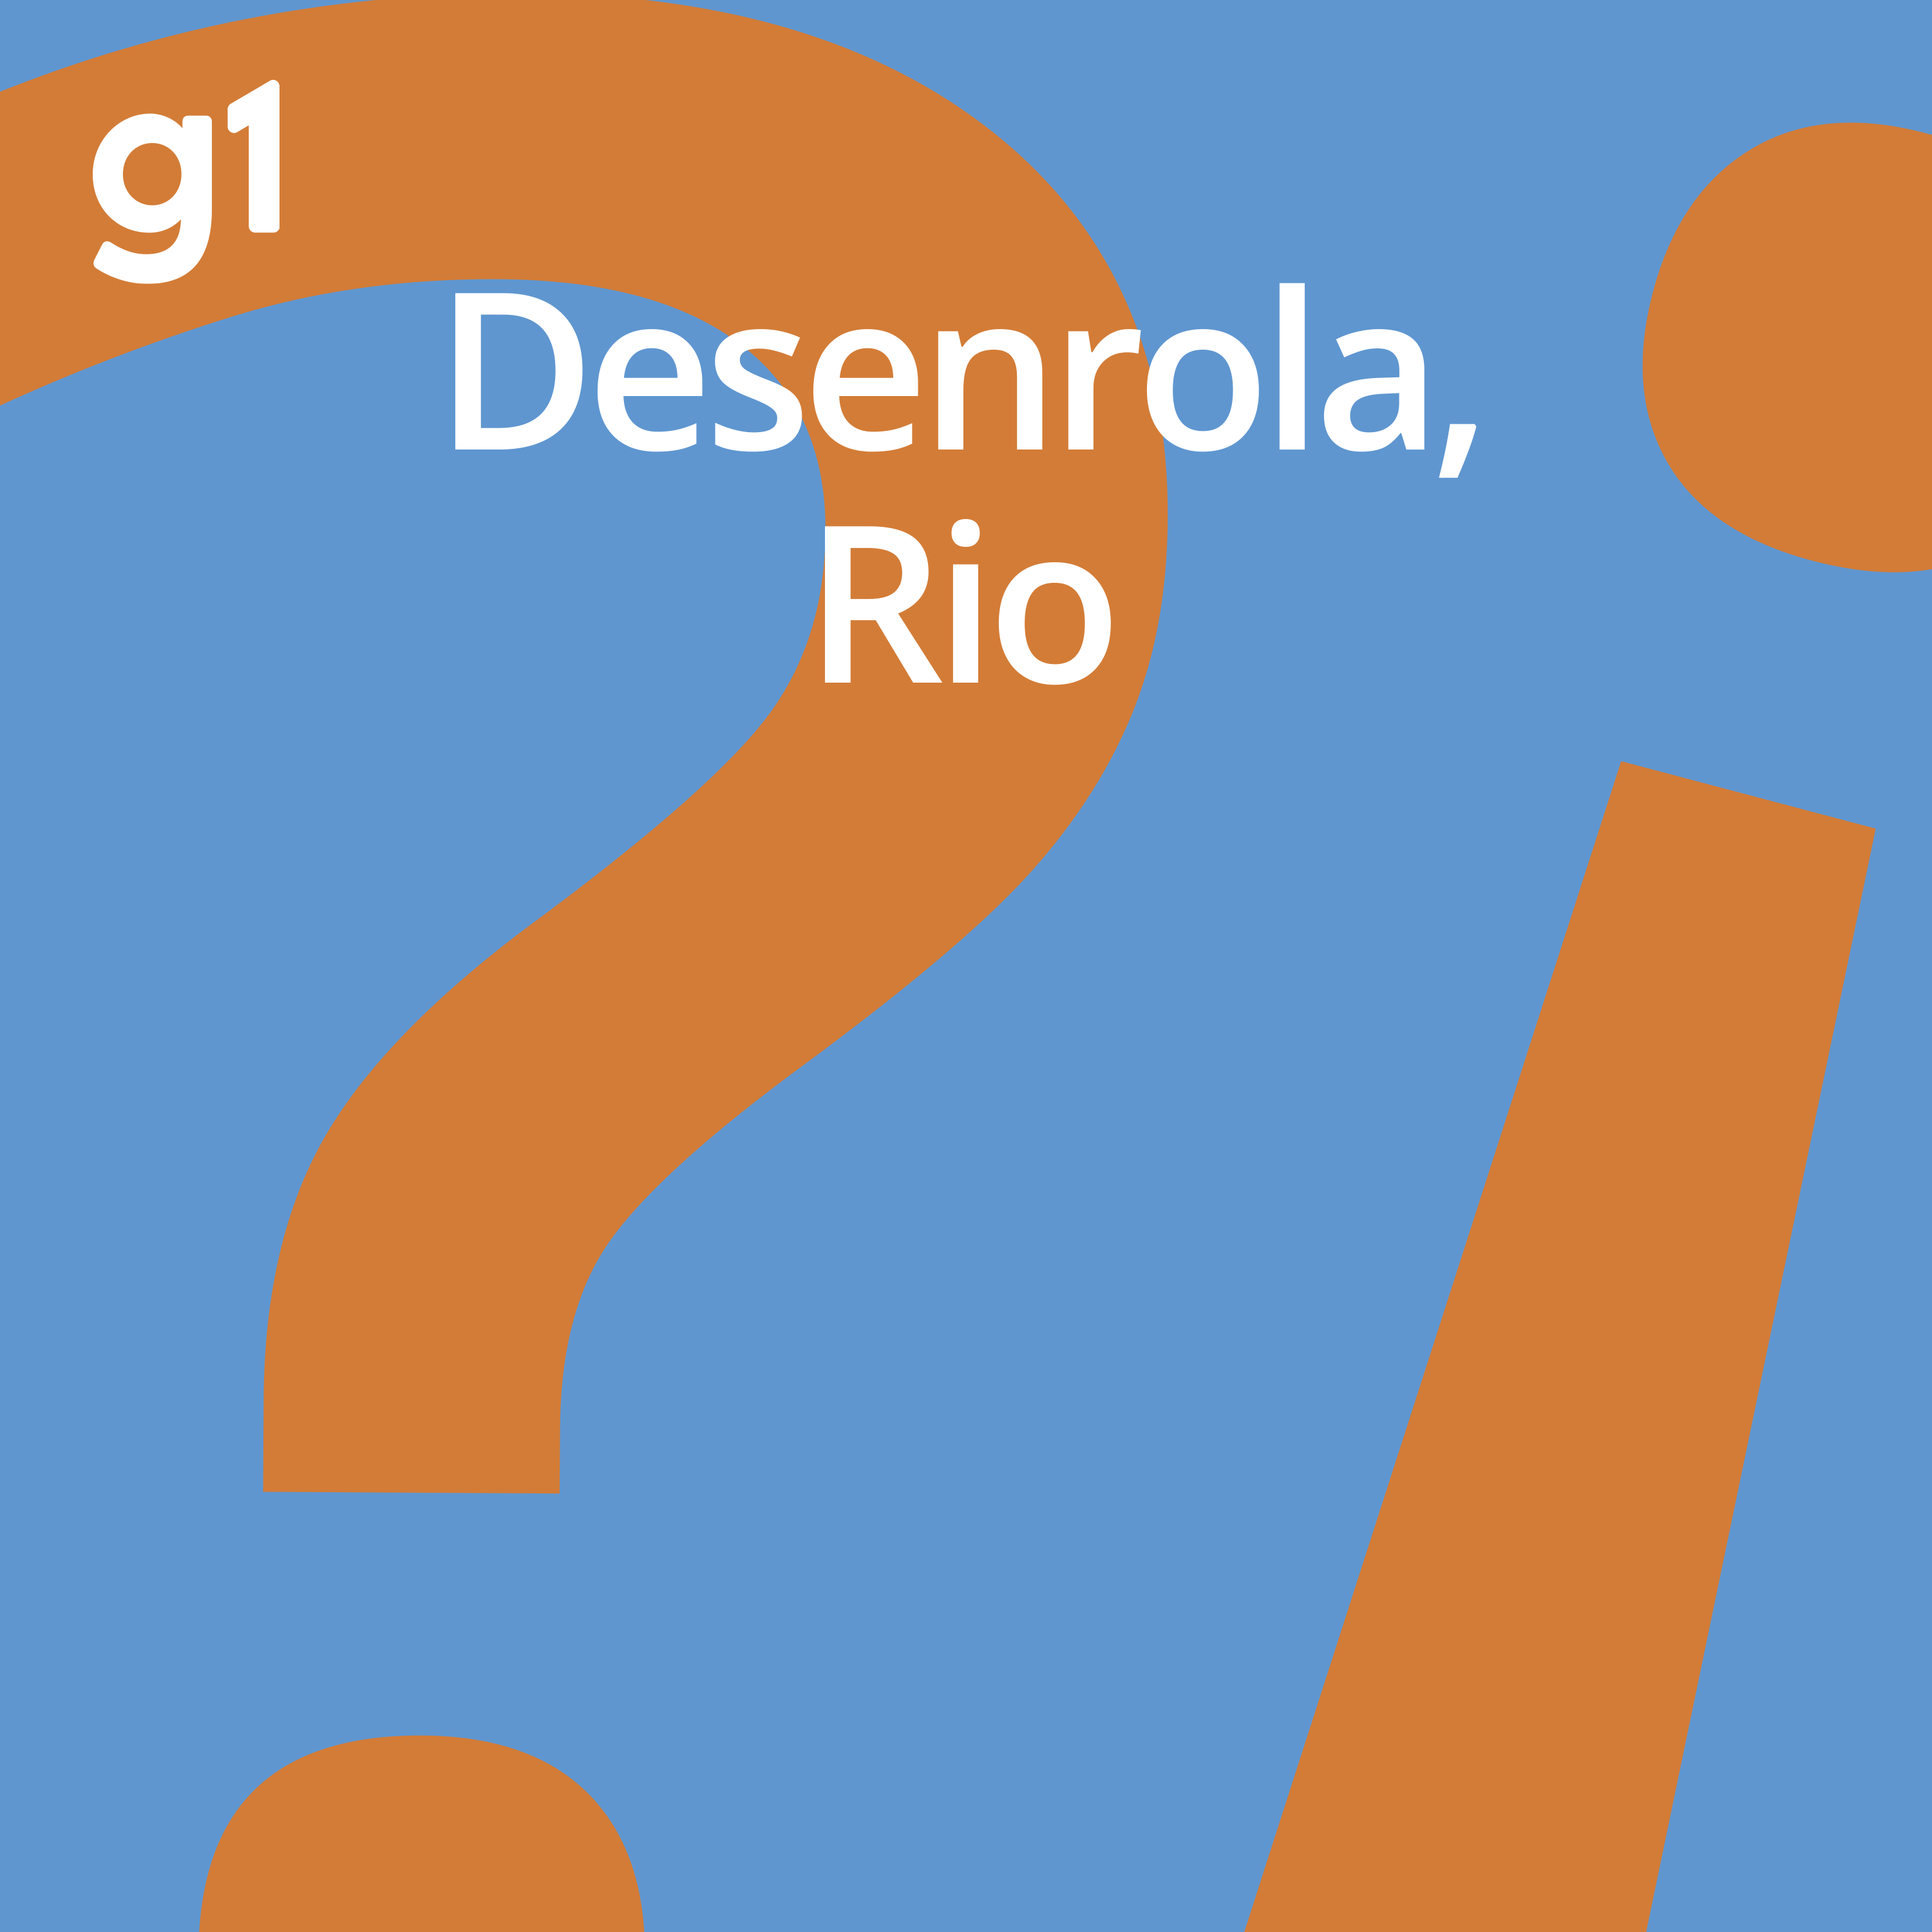 #219 Desenrola, Rio - Concurso Público Nacional Unificado